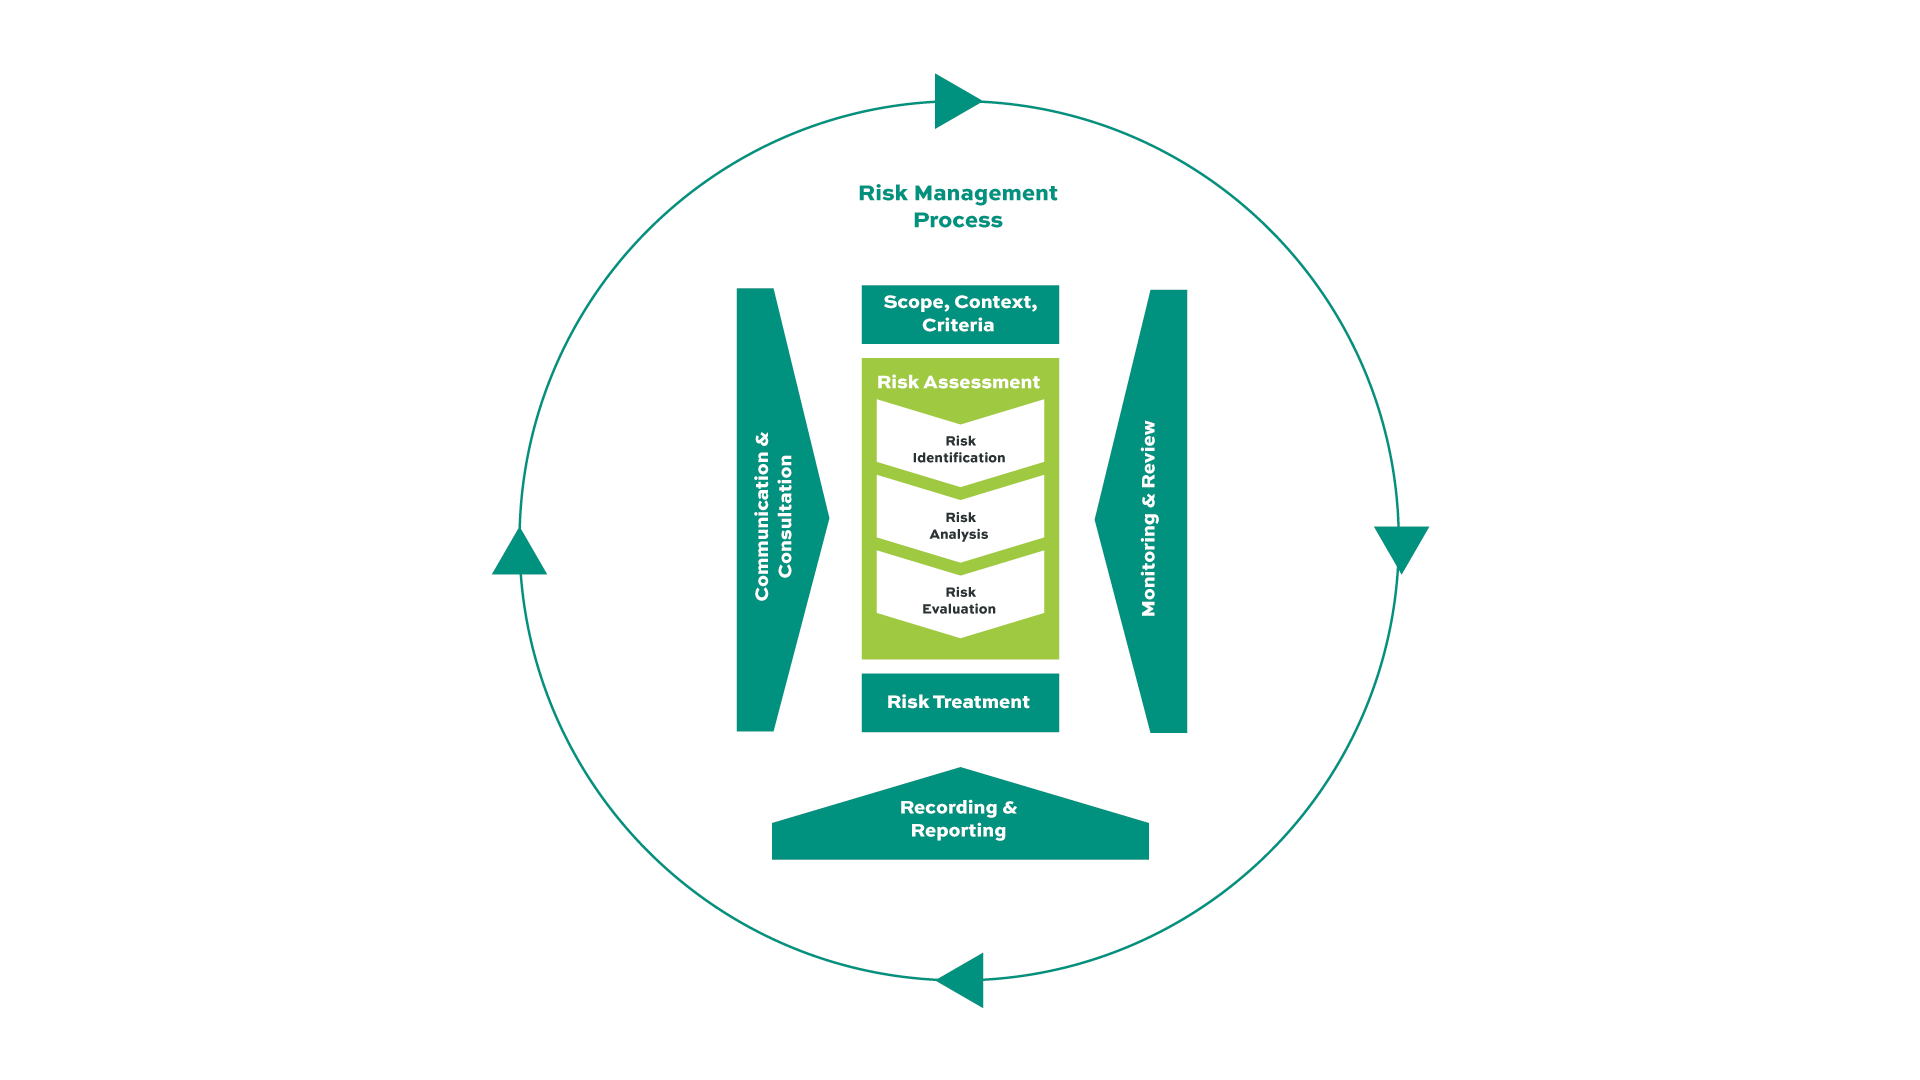 Figure 1 - Risk Management Process